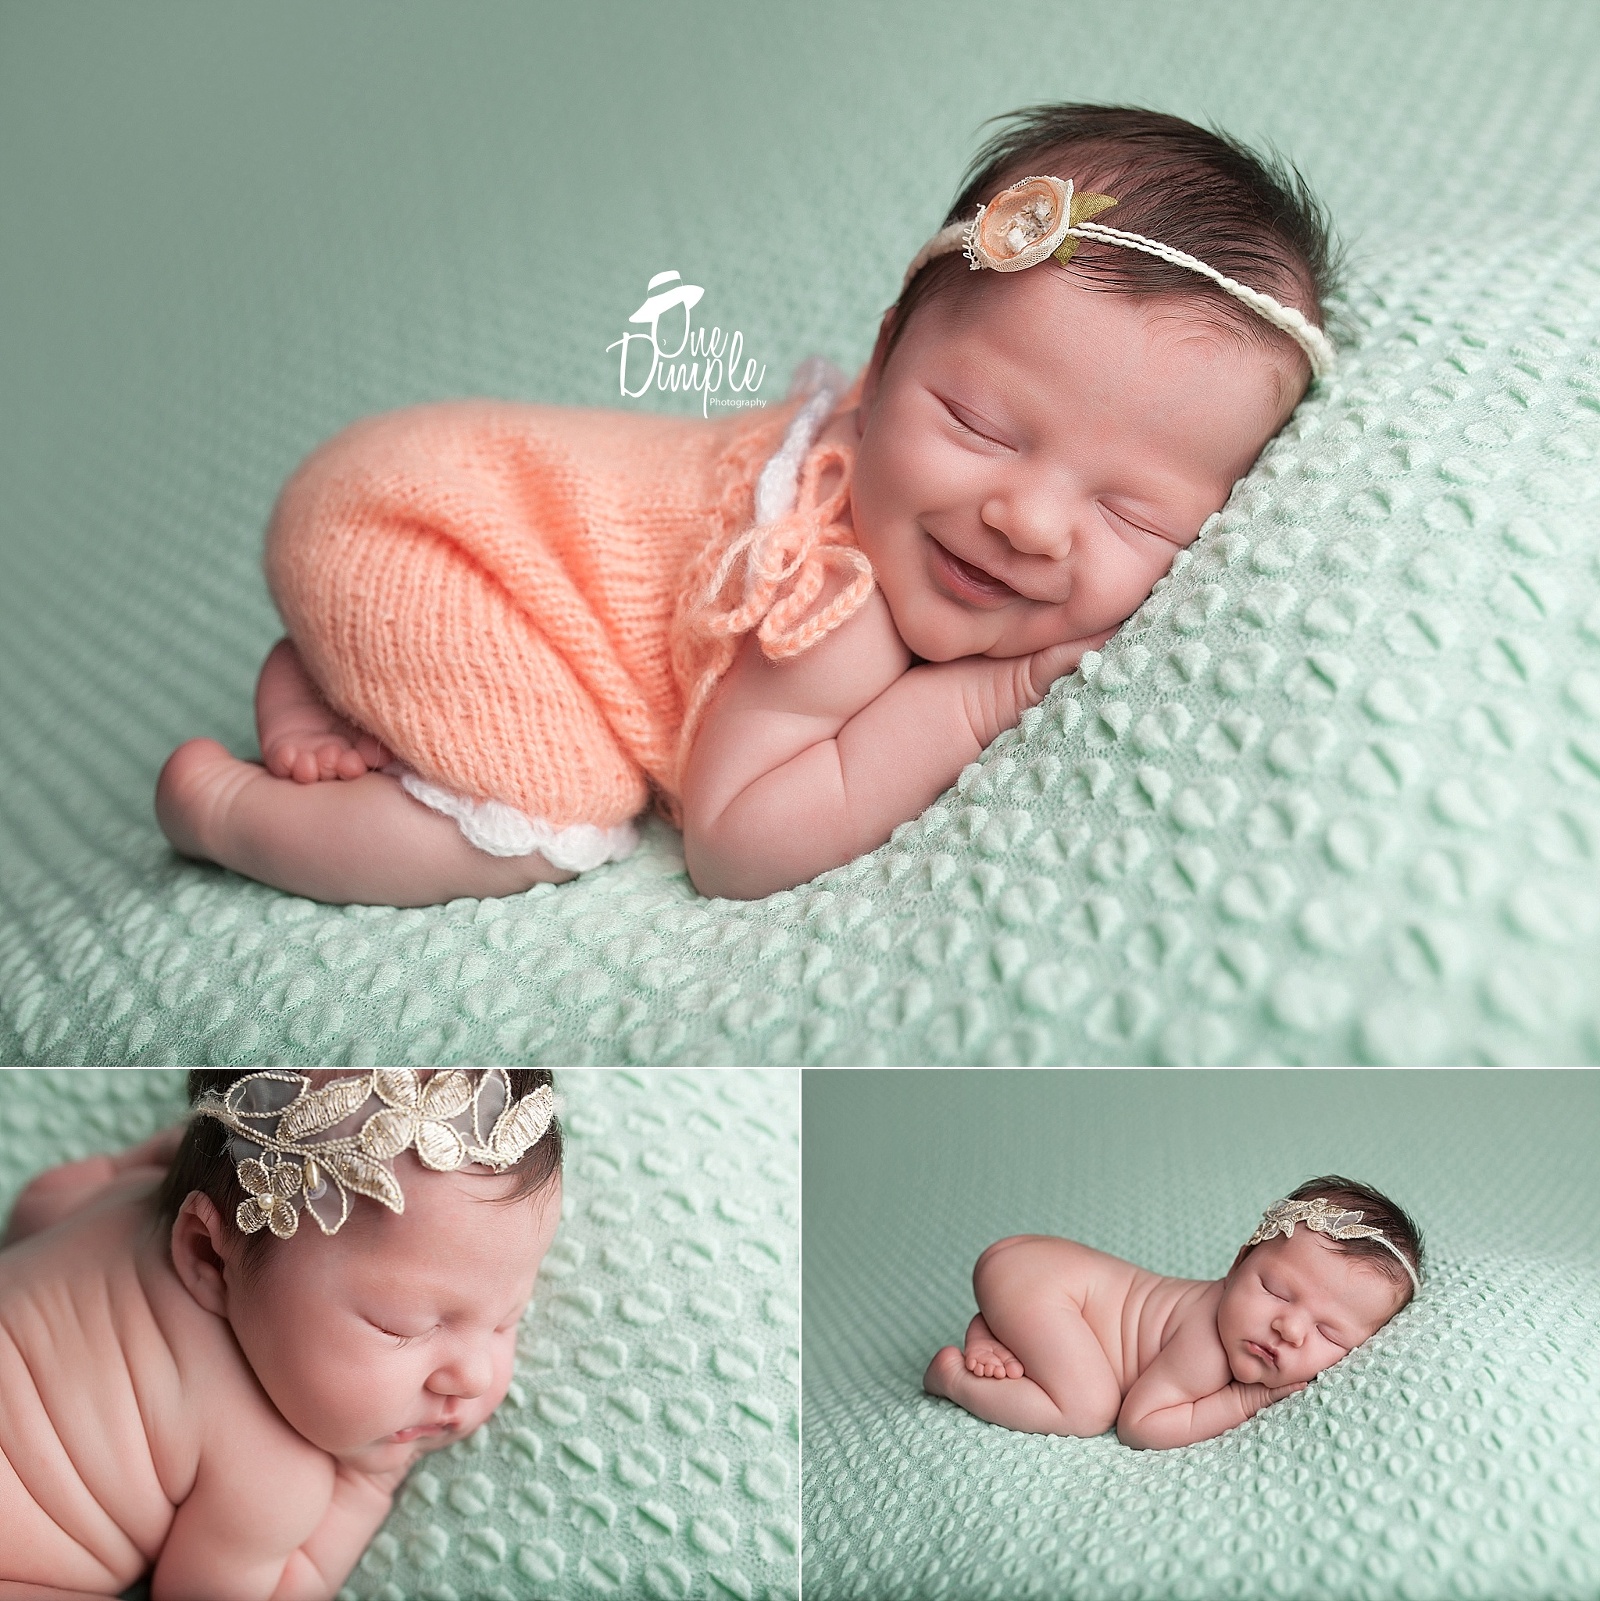 Smiling newborn baby girl